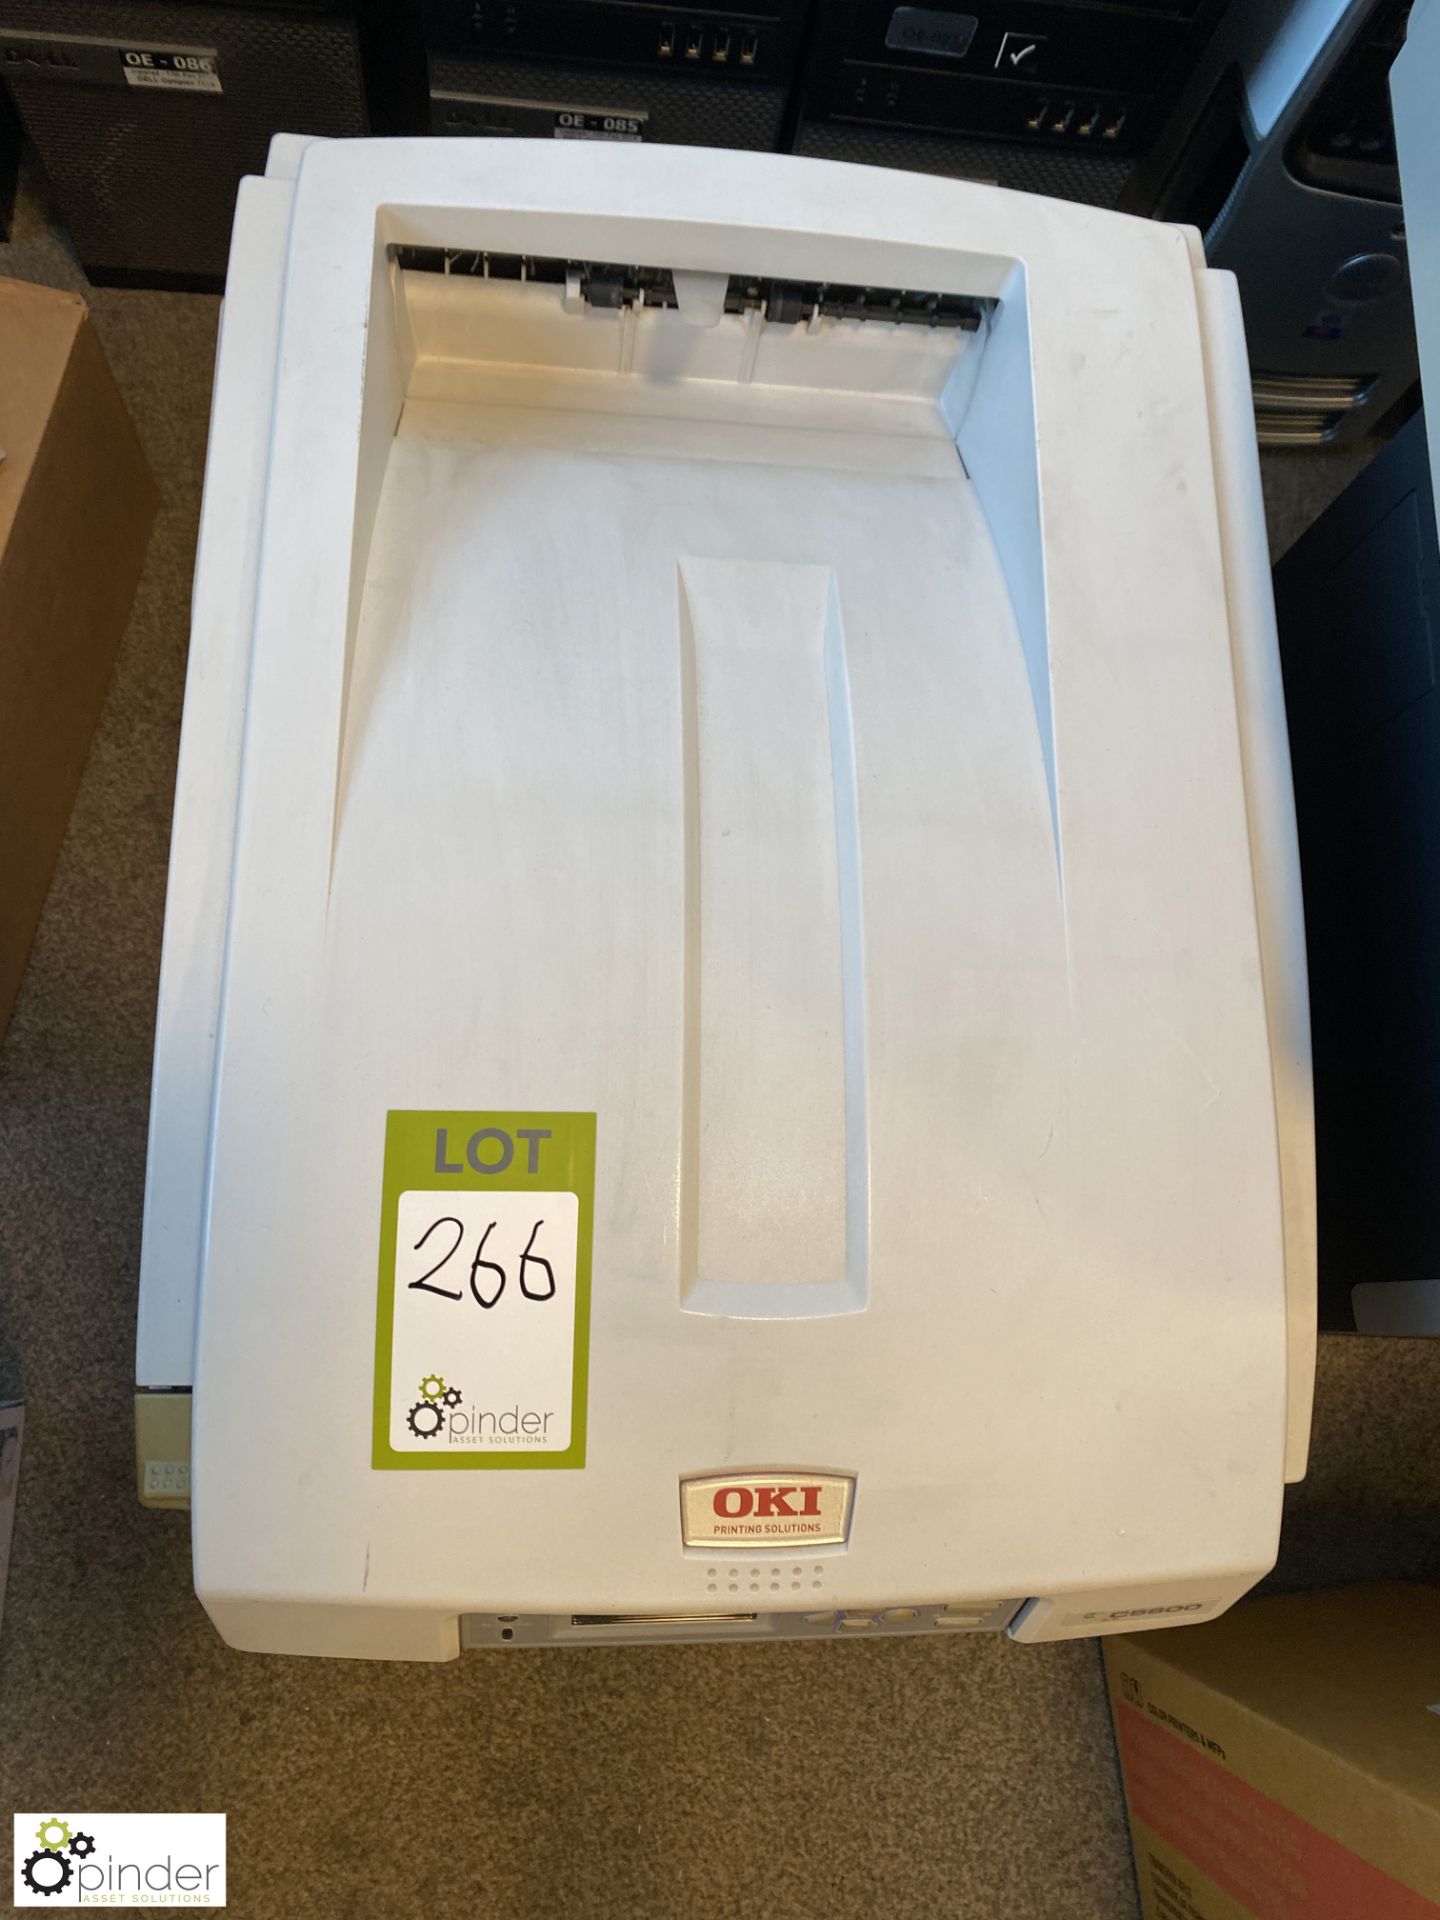 Oki C5600 Laser Printer, with quantity consumables including toner cartridges, drum cartridge, etc - Image 2 of 7